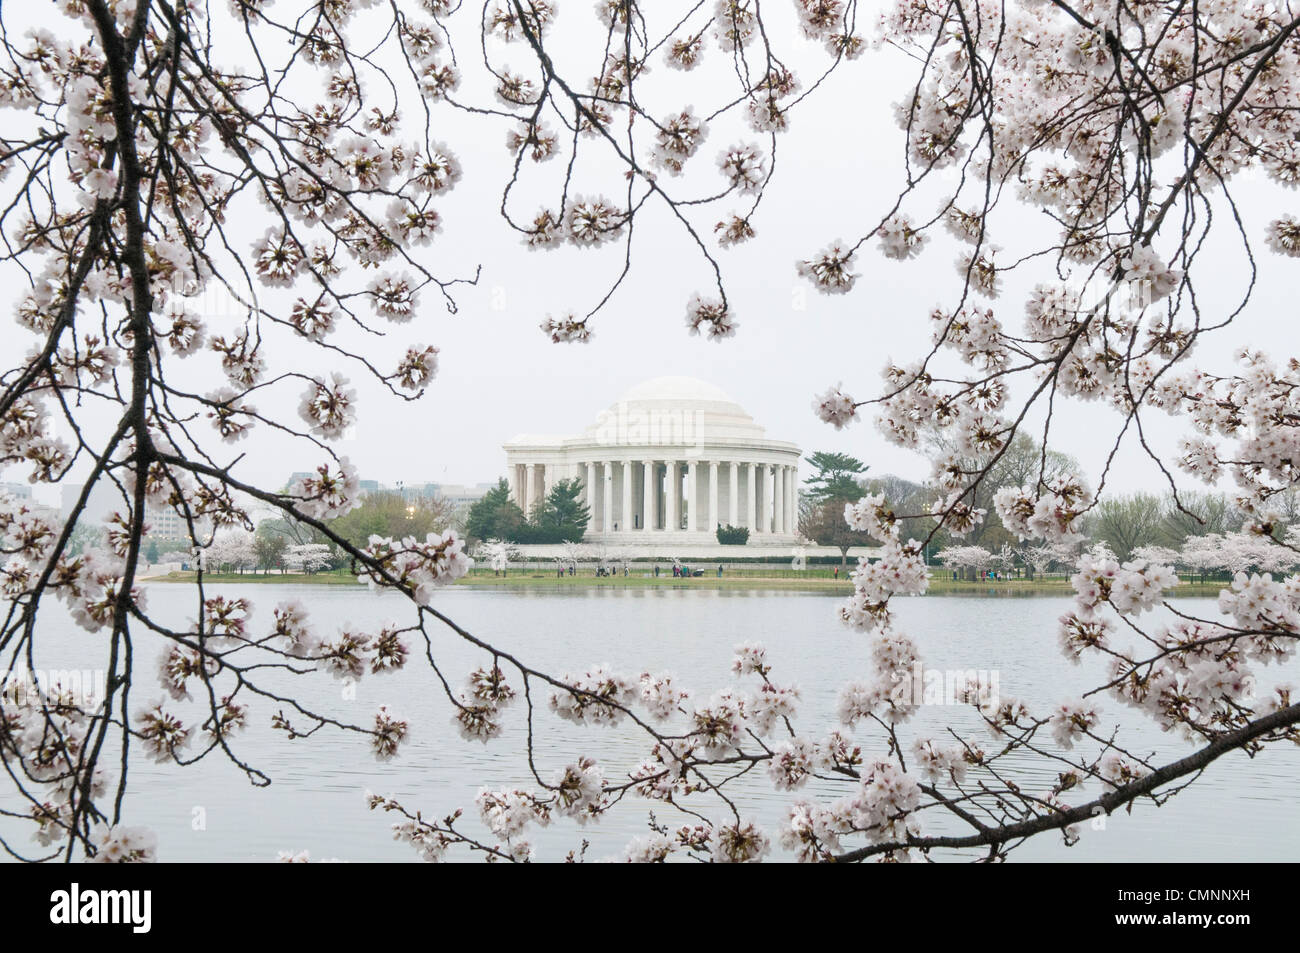 El Yoshino cerezo alrededor de la Cuenca Tidal, celebran este año su centenario de la primera siembra en 1912. Con la excepcionalmente cálido invierno, el pico bloom ha venido muy temprano este año. En esta foto tomada el 18 de marzo de 2012, las flores están en flor de pico. El Jefferson Memorial Foto de stock